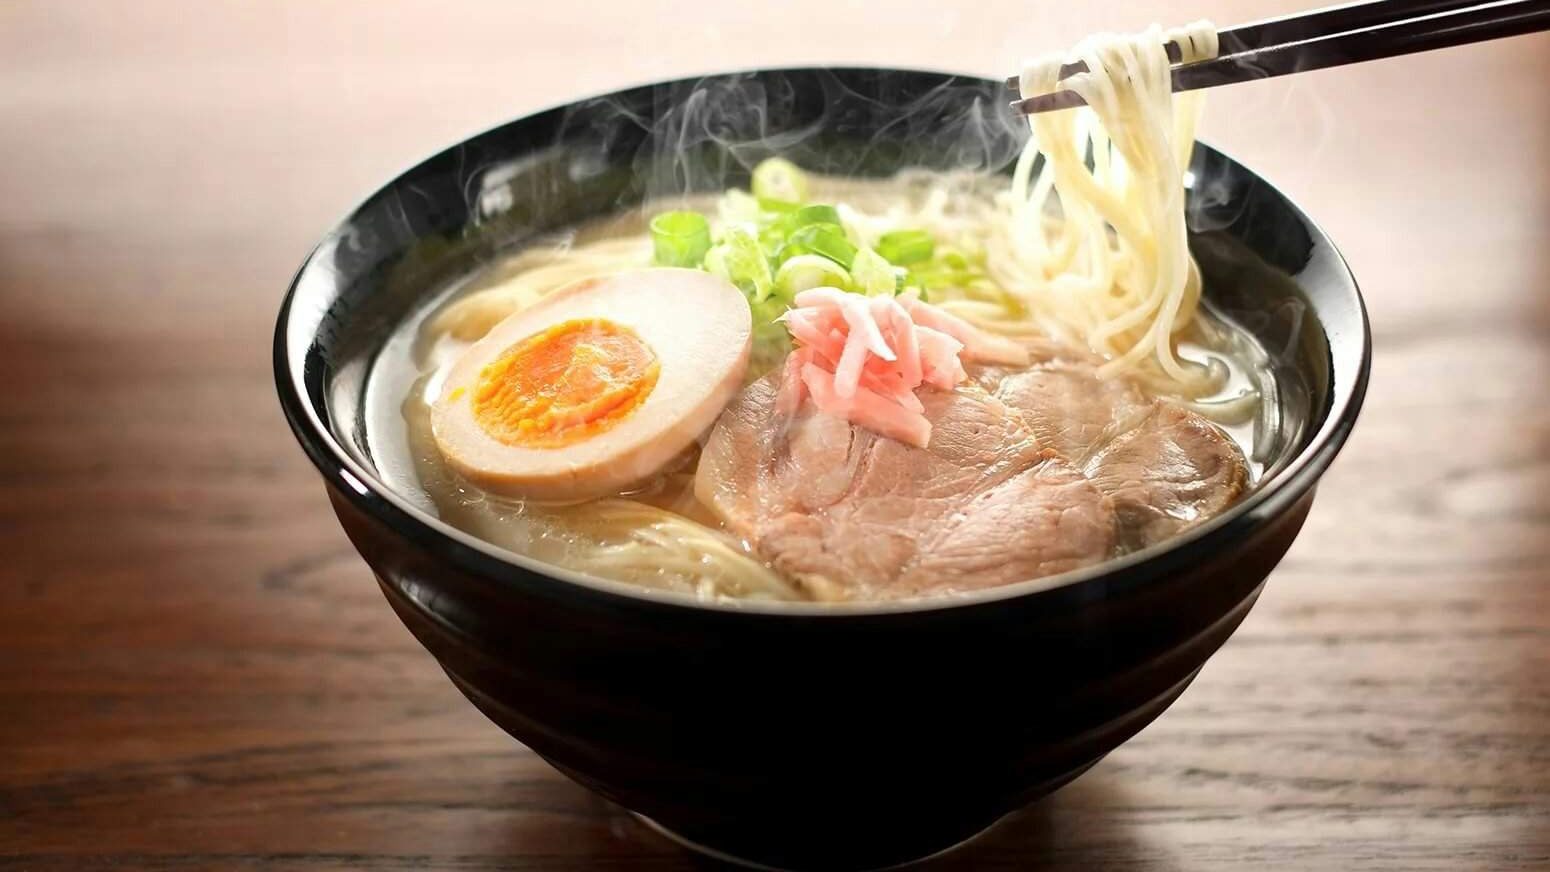 Рамен это горячий суп из пшеничной лапши в ароматном бульоне. Японская национальная кухня разнообразна блюдами.